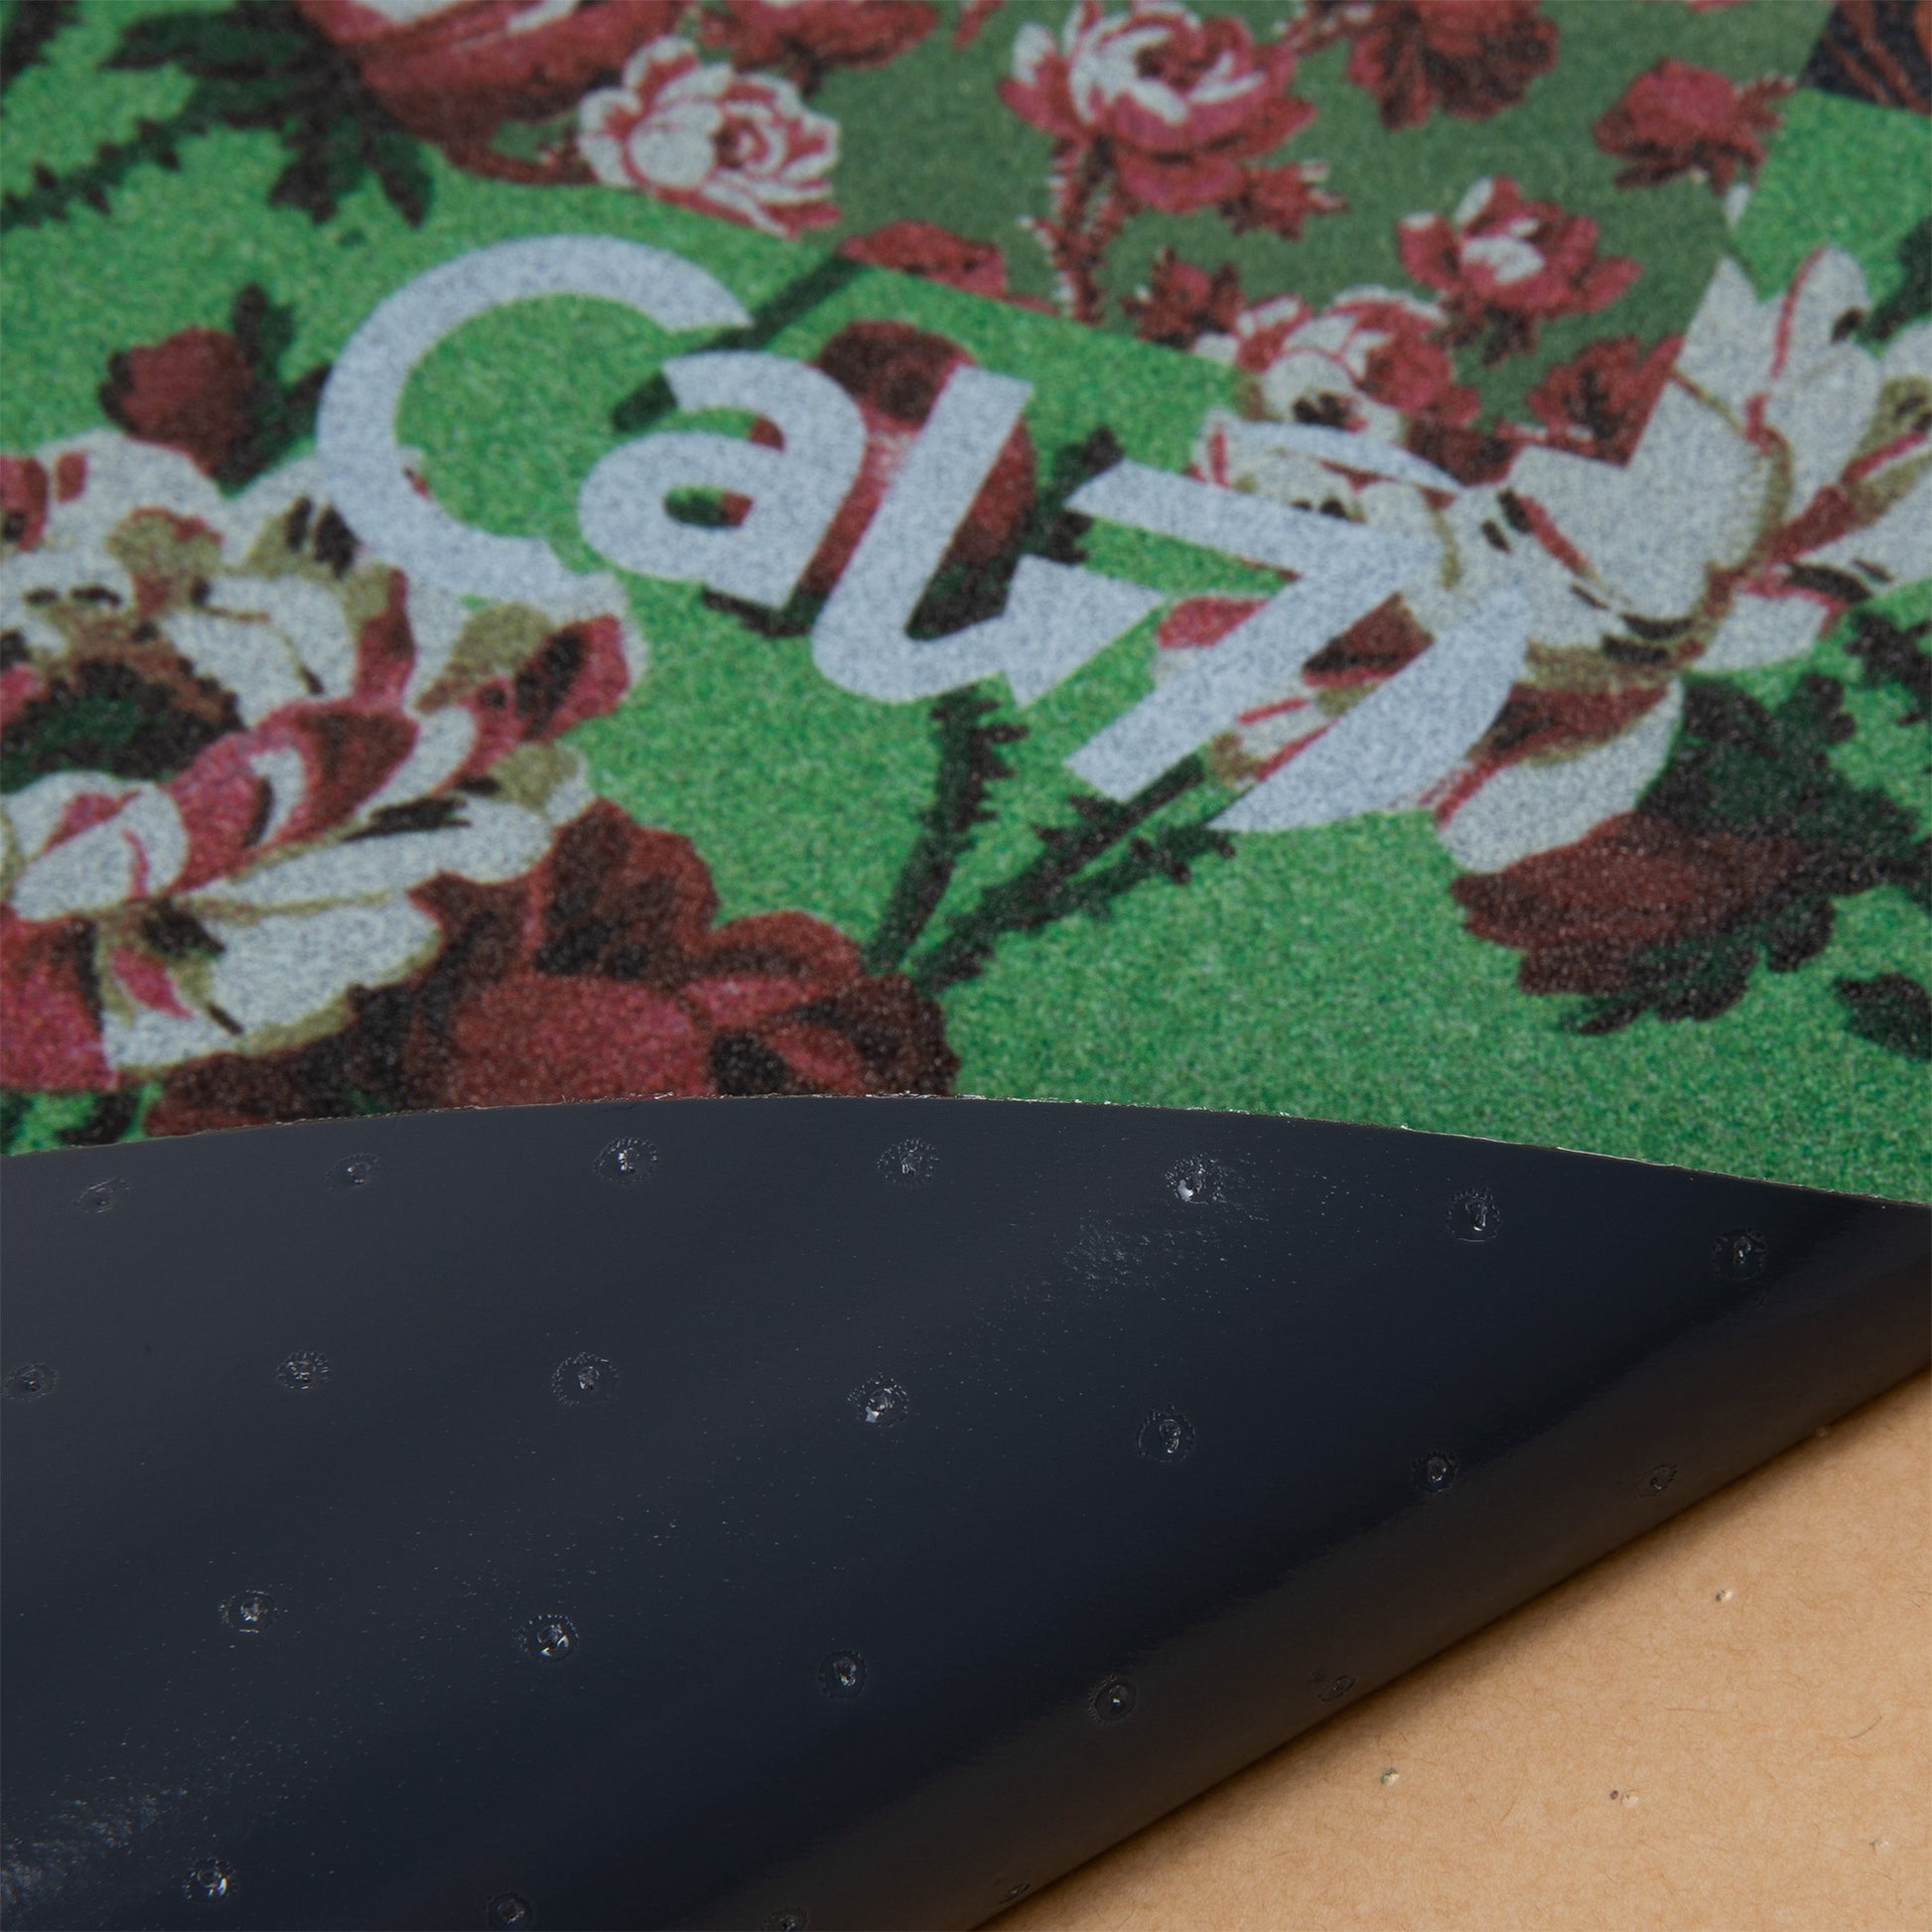 Cal 7 black skateboard griptape with flower design